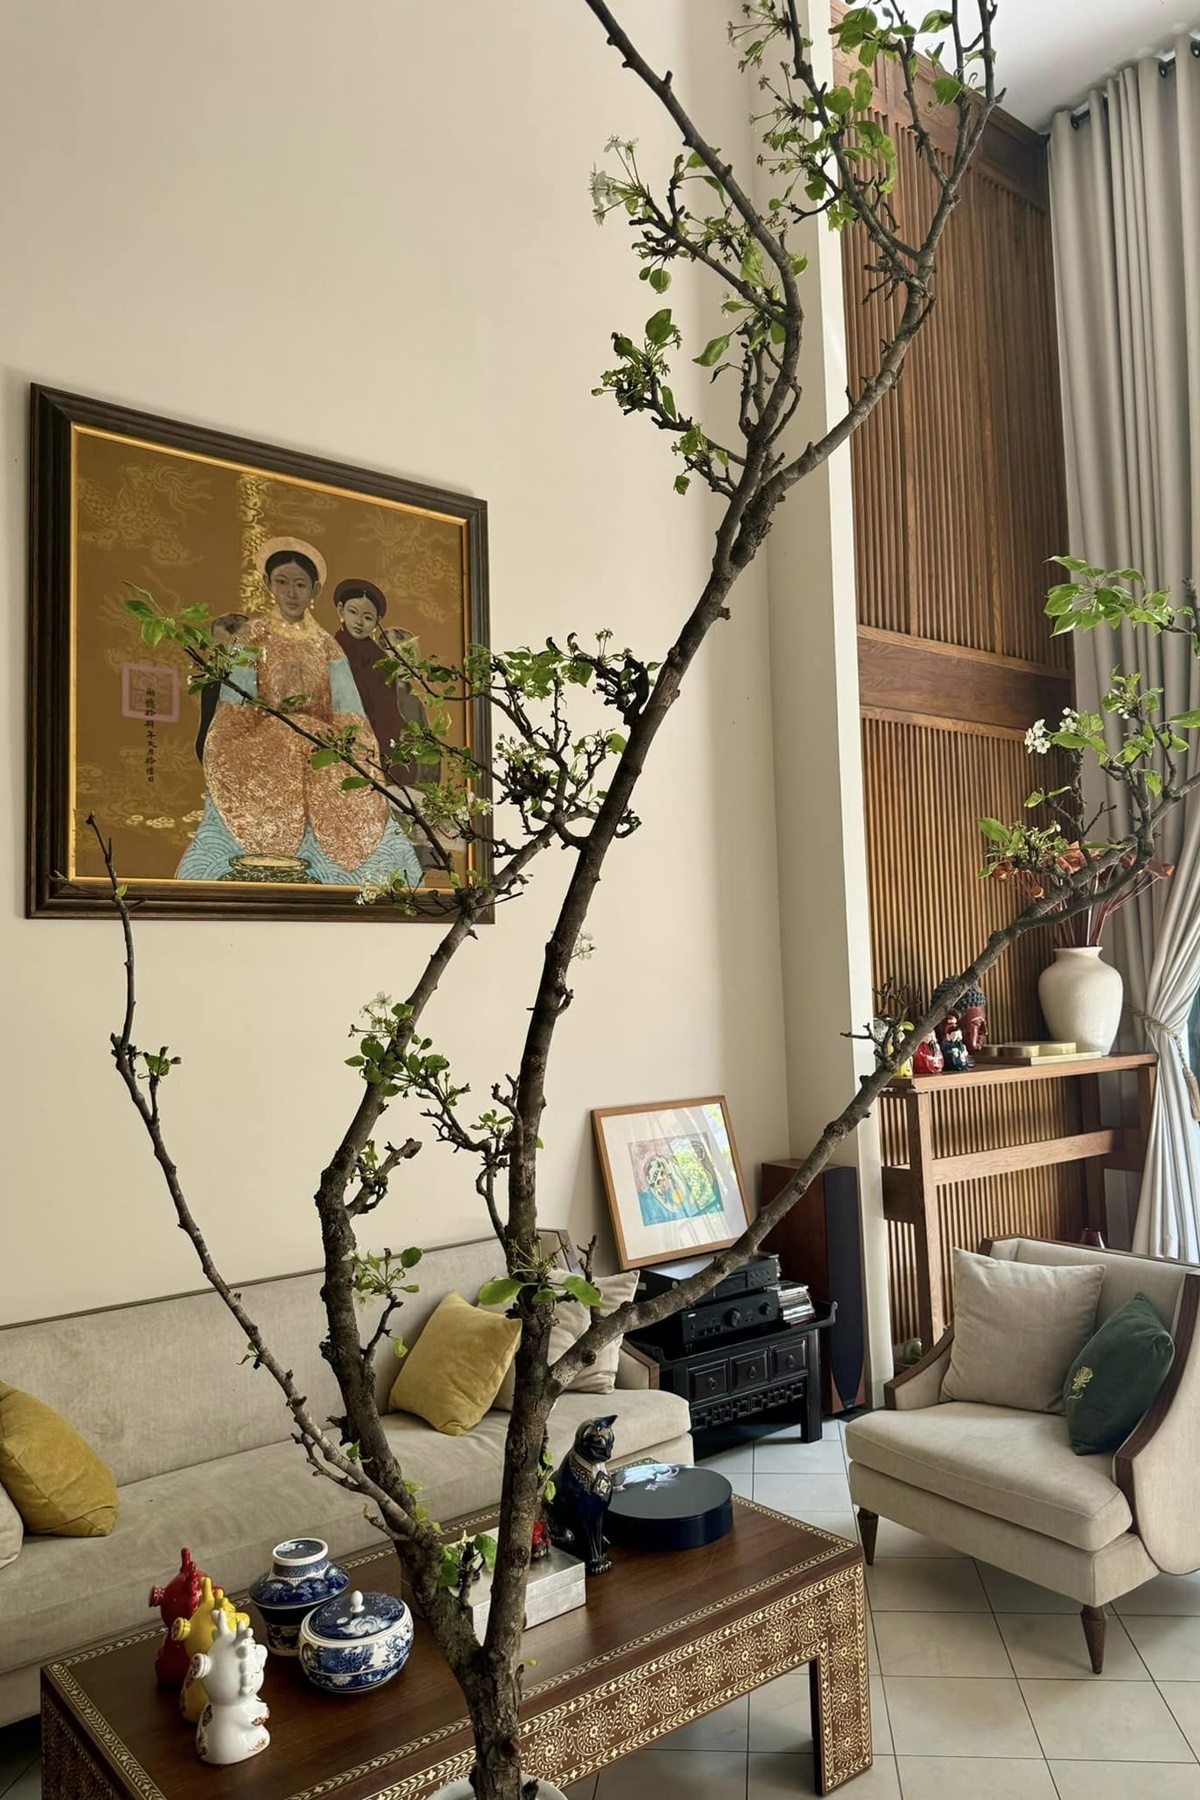 Nhà phố 400 m2 Quang Dũng sống cùng mẹ ở Sài Gòn - Ảnh 5.